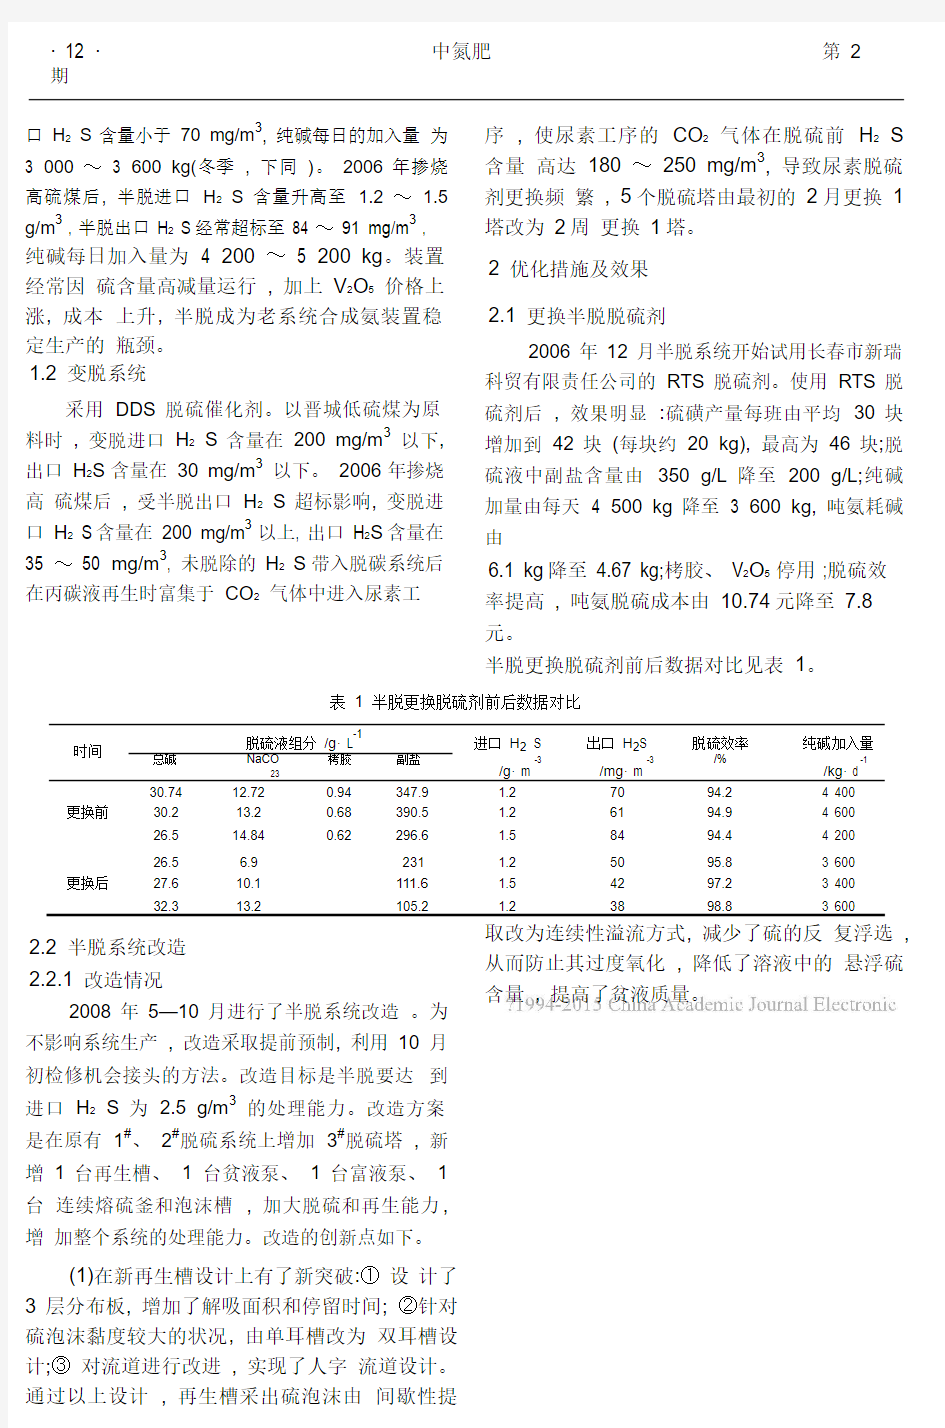 脱硫系统优化改造总结_张云芳.pdf